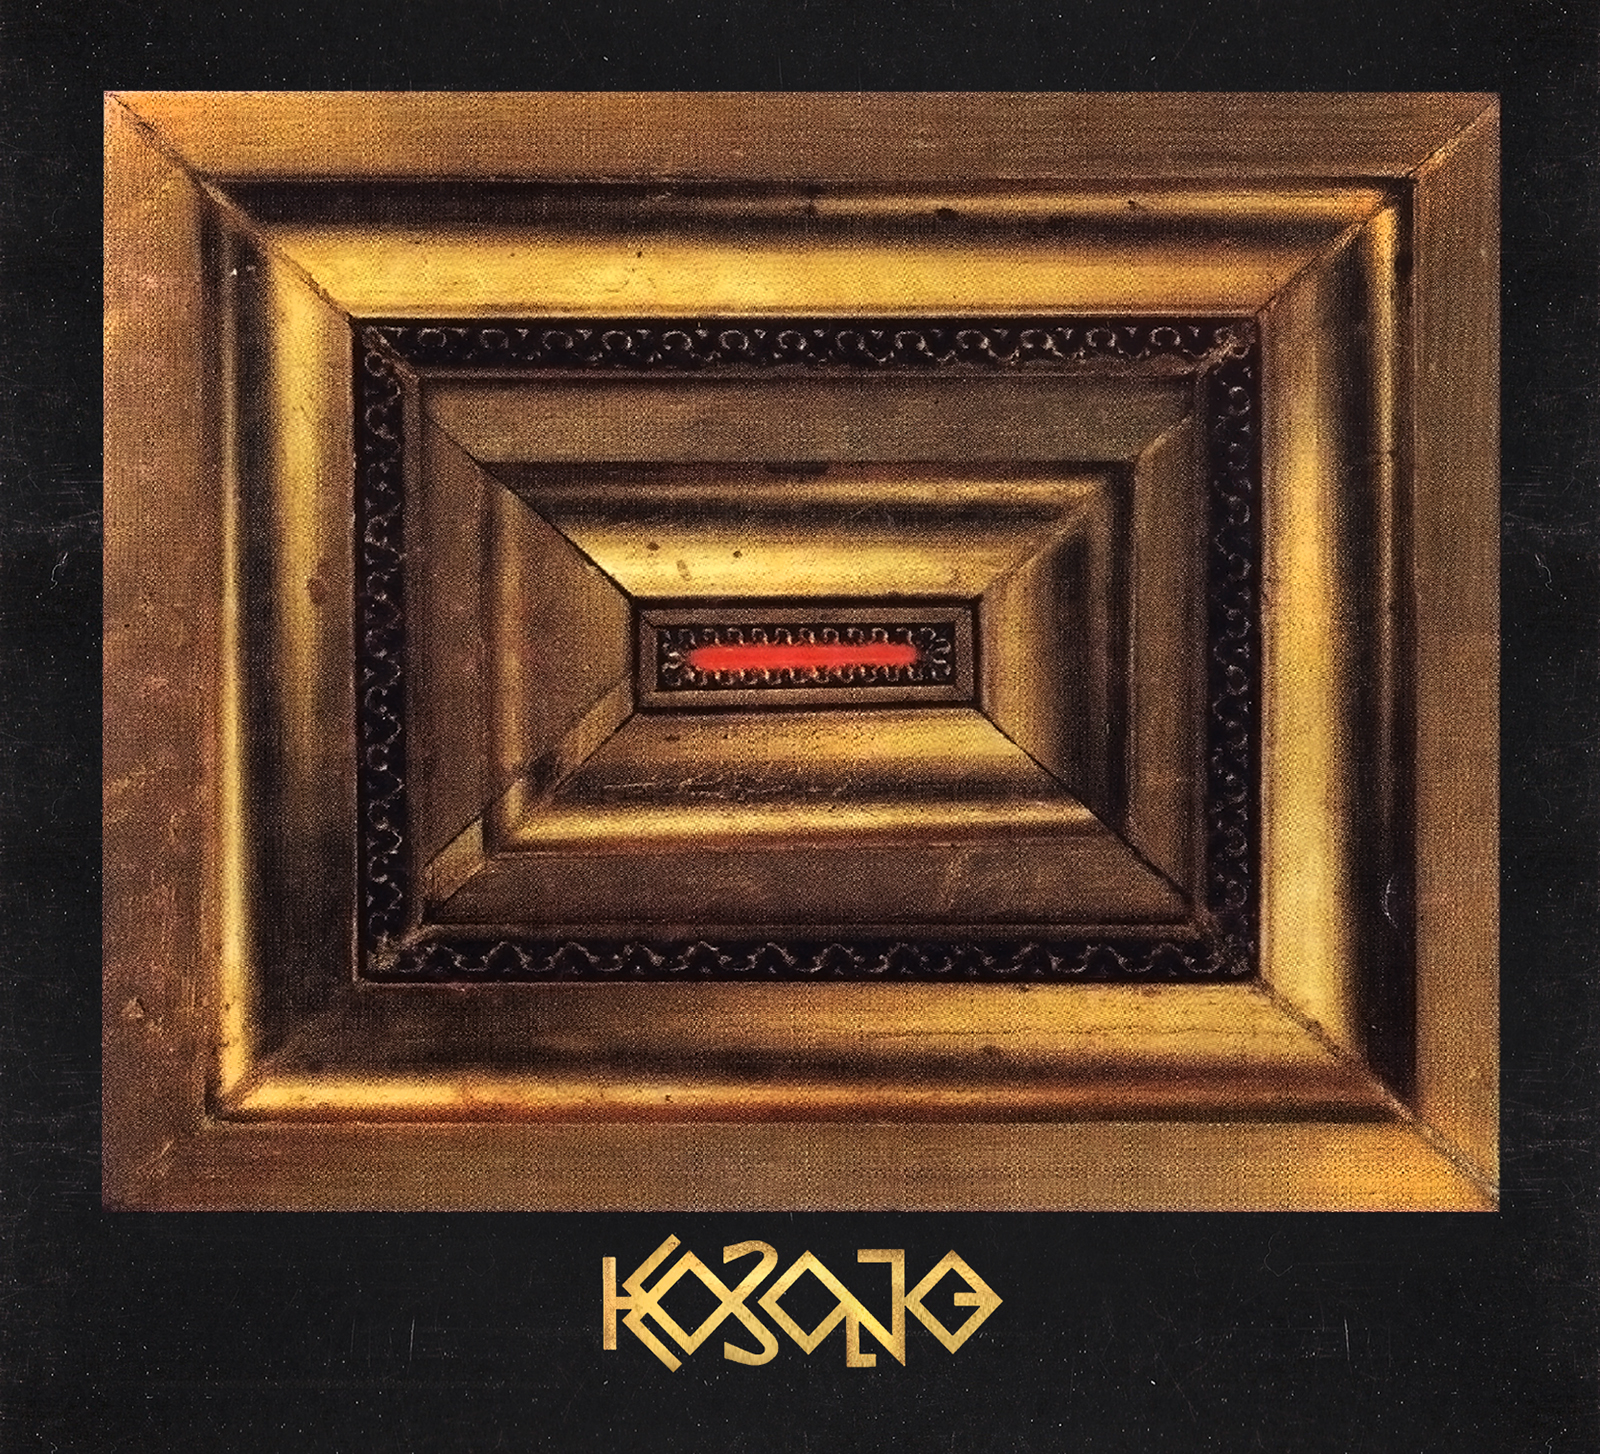 Kobong – reedycja debiutanckiego albumu najchętniej kupowaną płytą w Empik.com